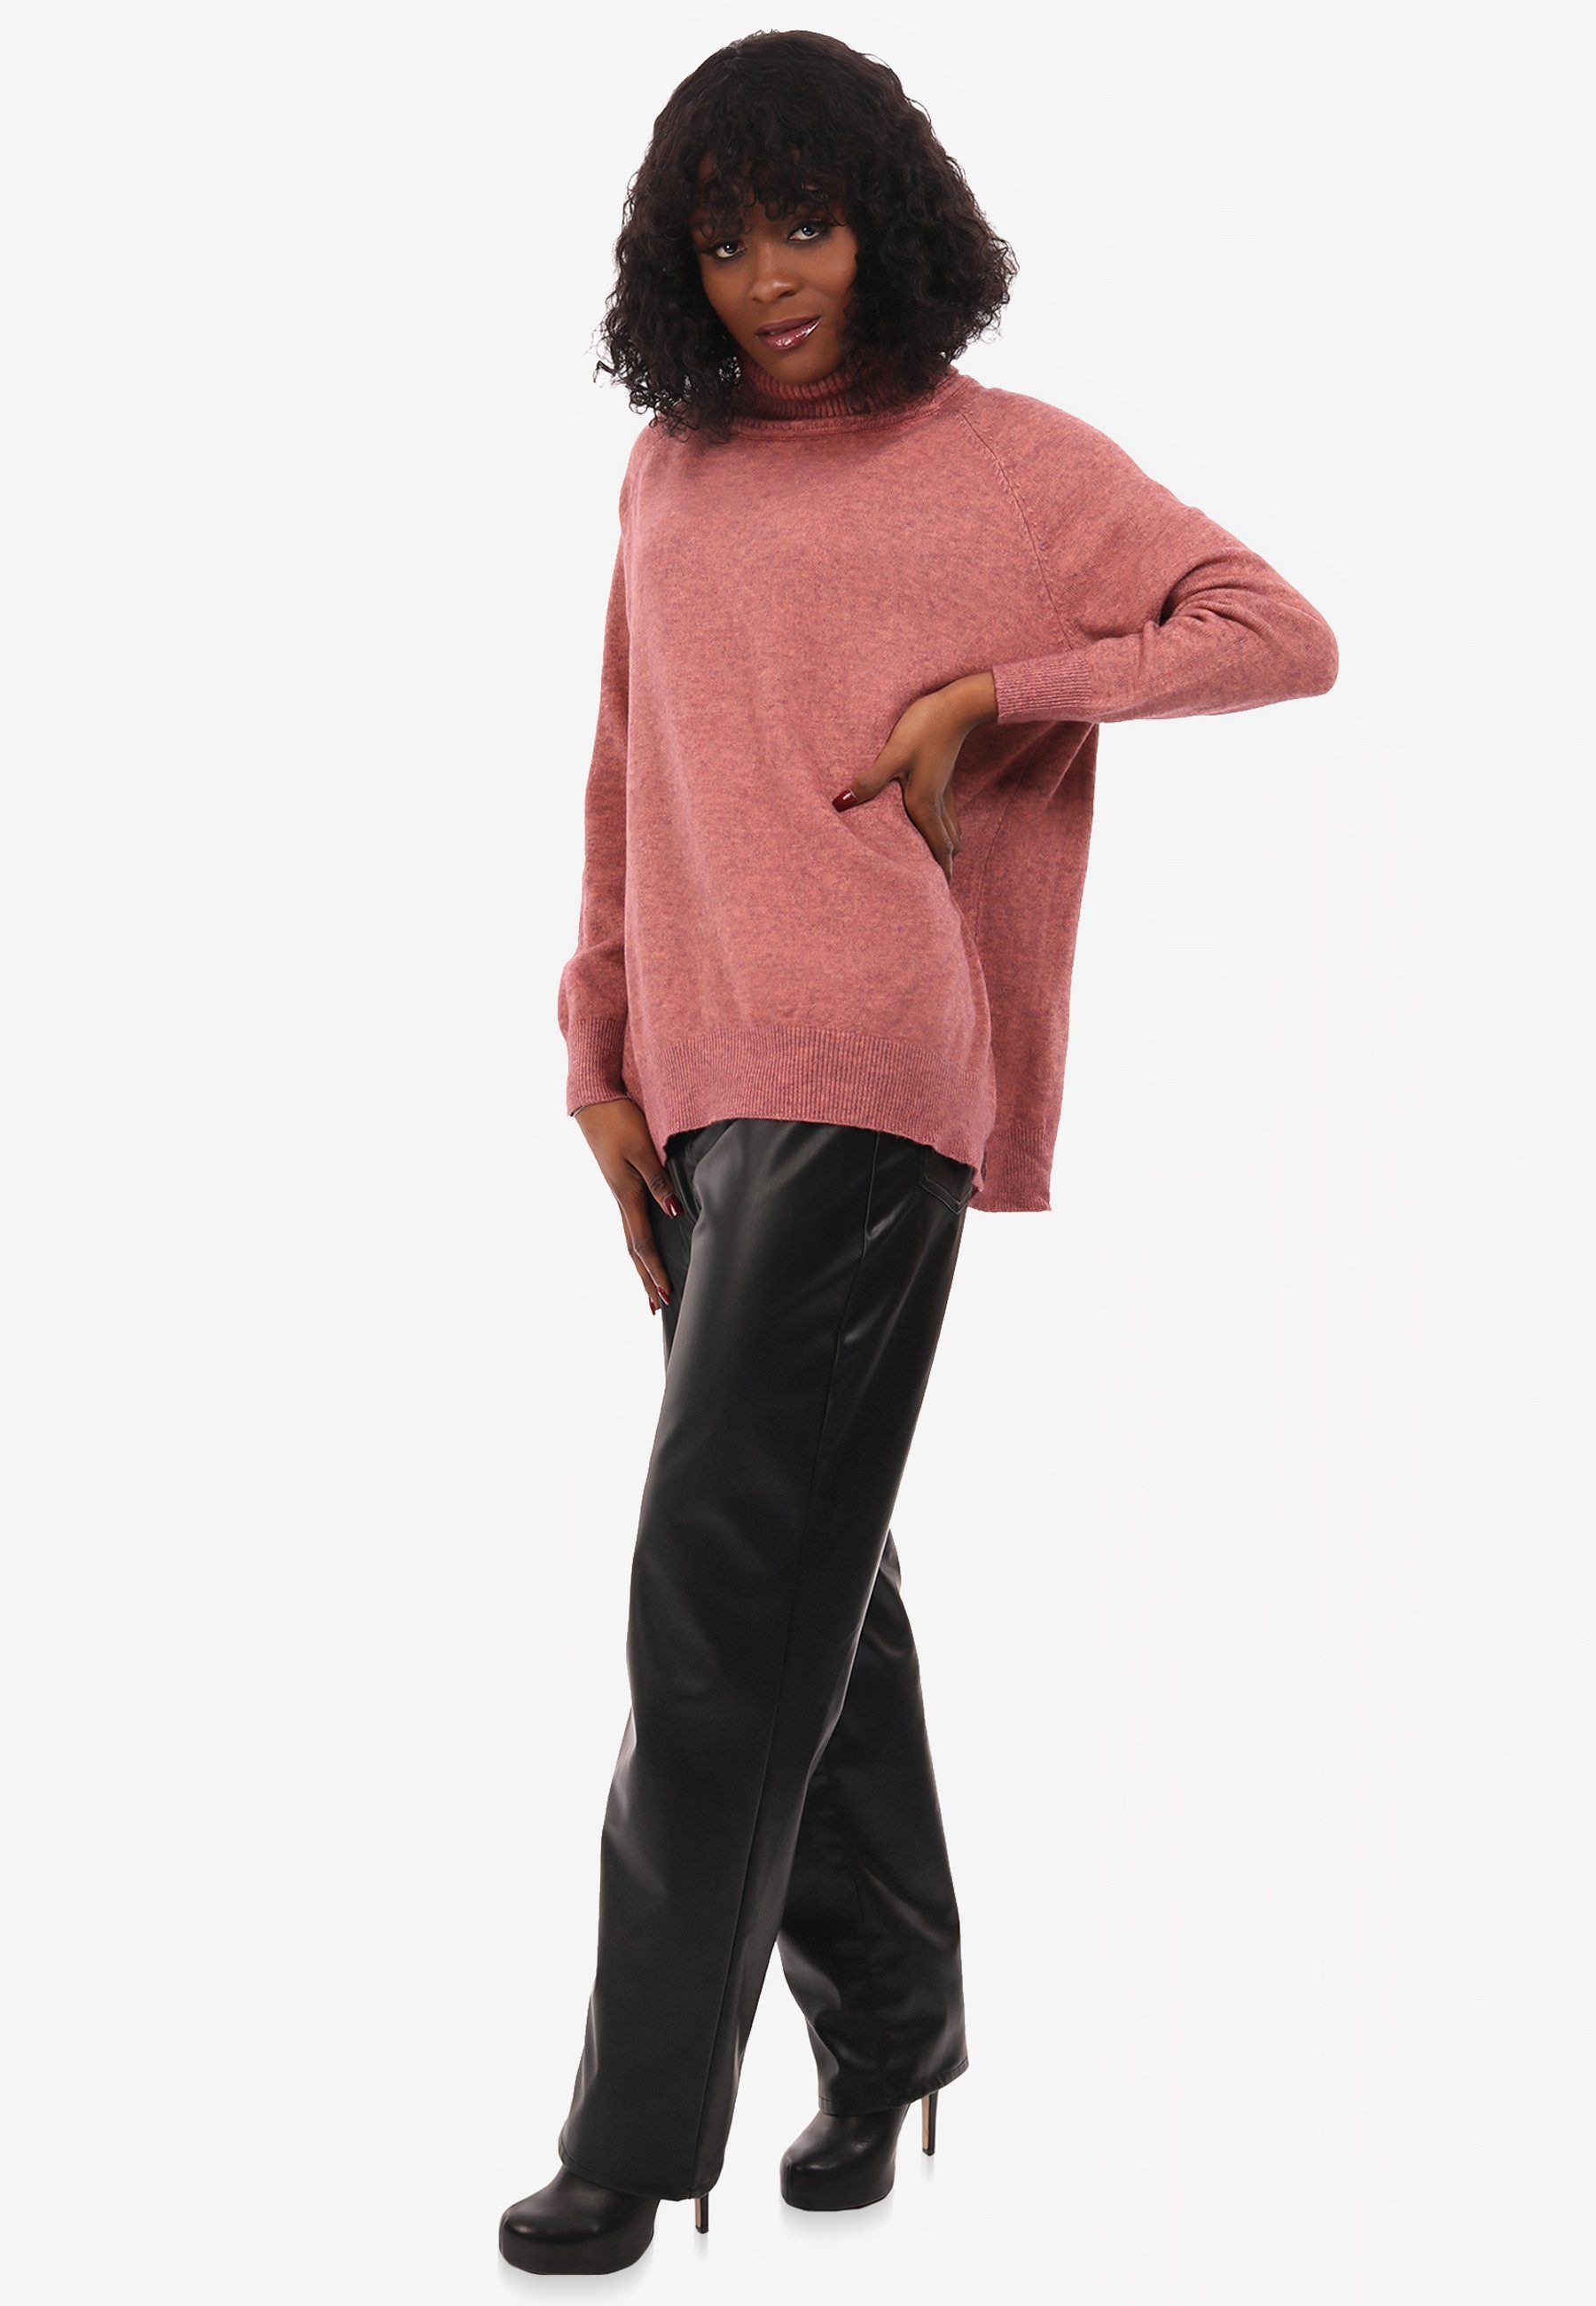 Unifarbe & Rollkragen Style mit Pullover Fashion in YC altrosa Feinstrick Strickpullover aus